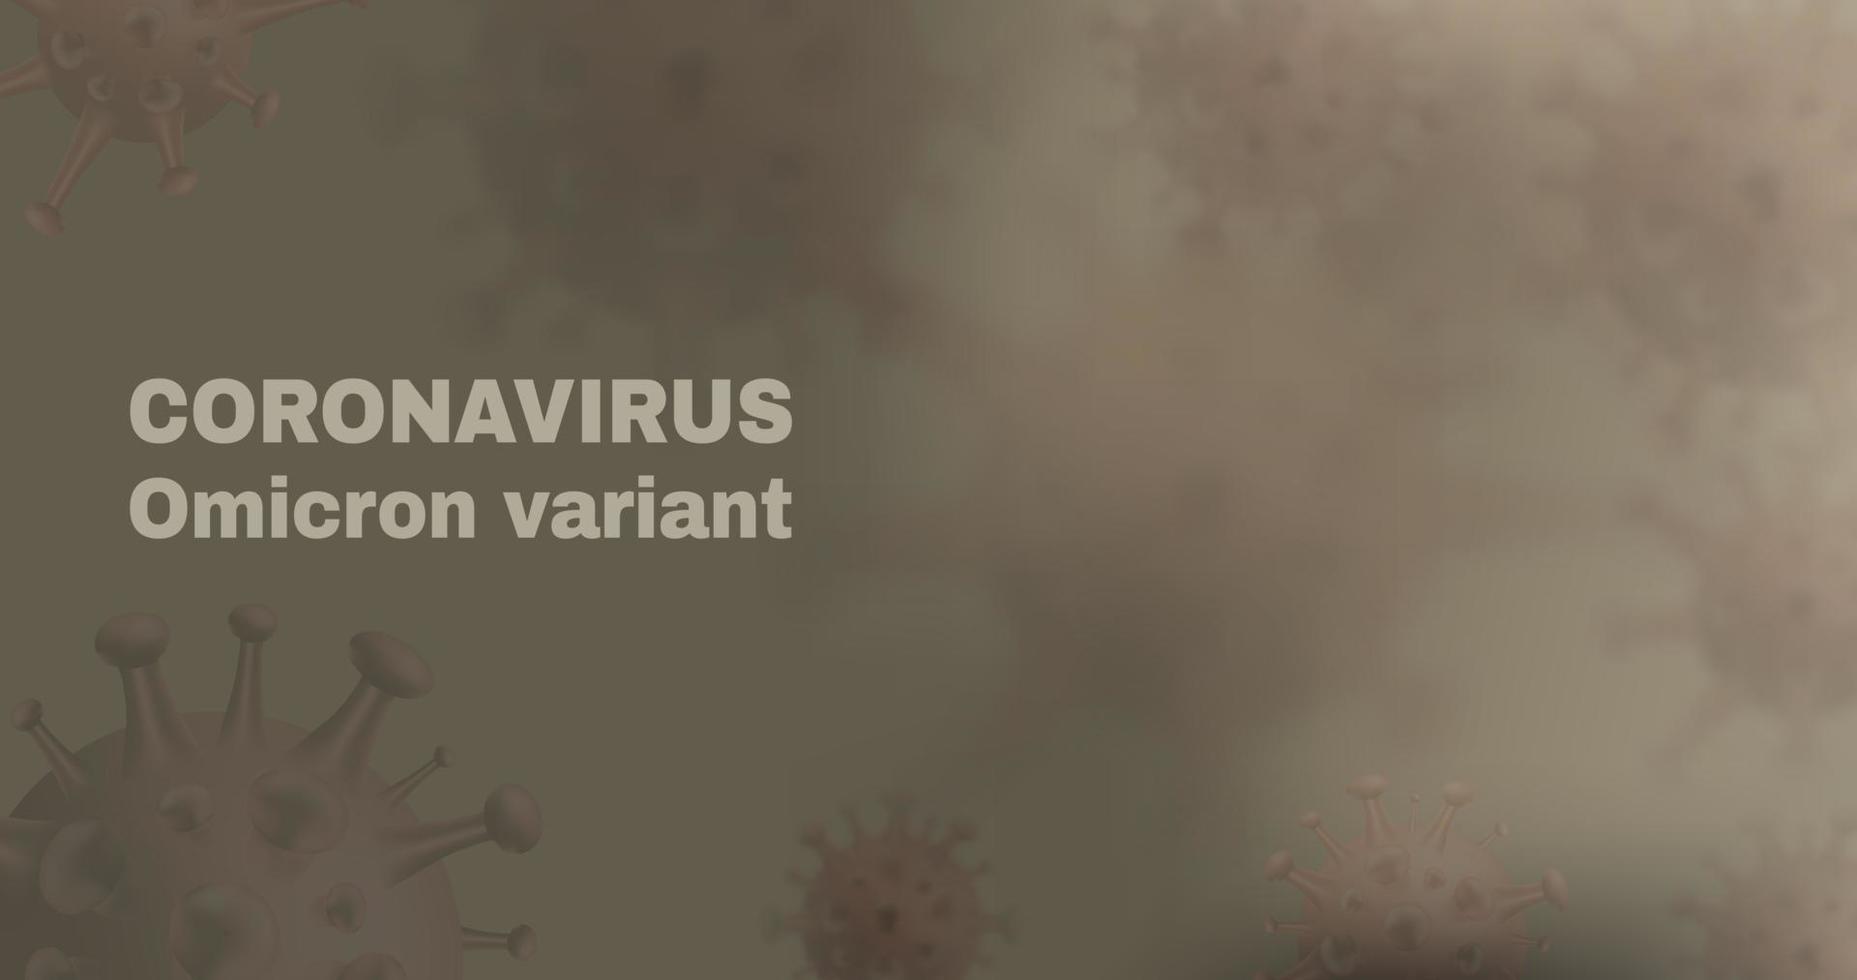 nouvelle variante de coronavirus - omicron. fond de vecteur covid-10 avec des cellules virales réalistes.